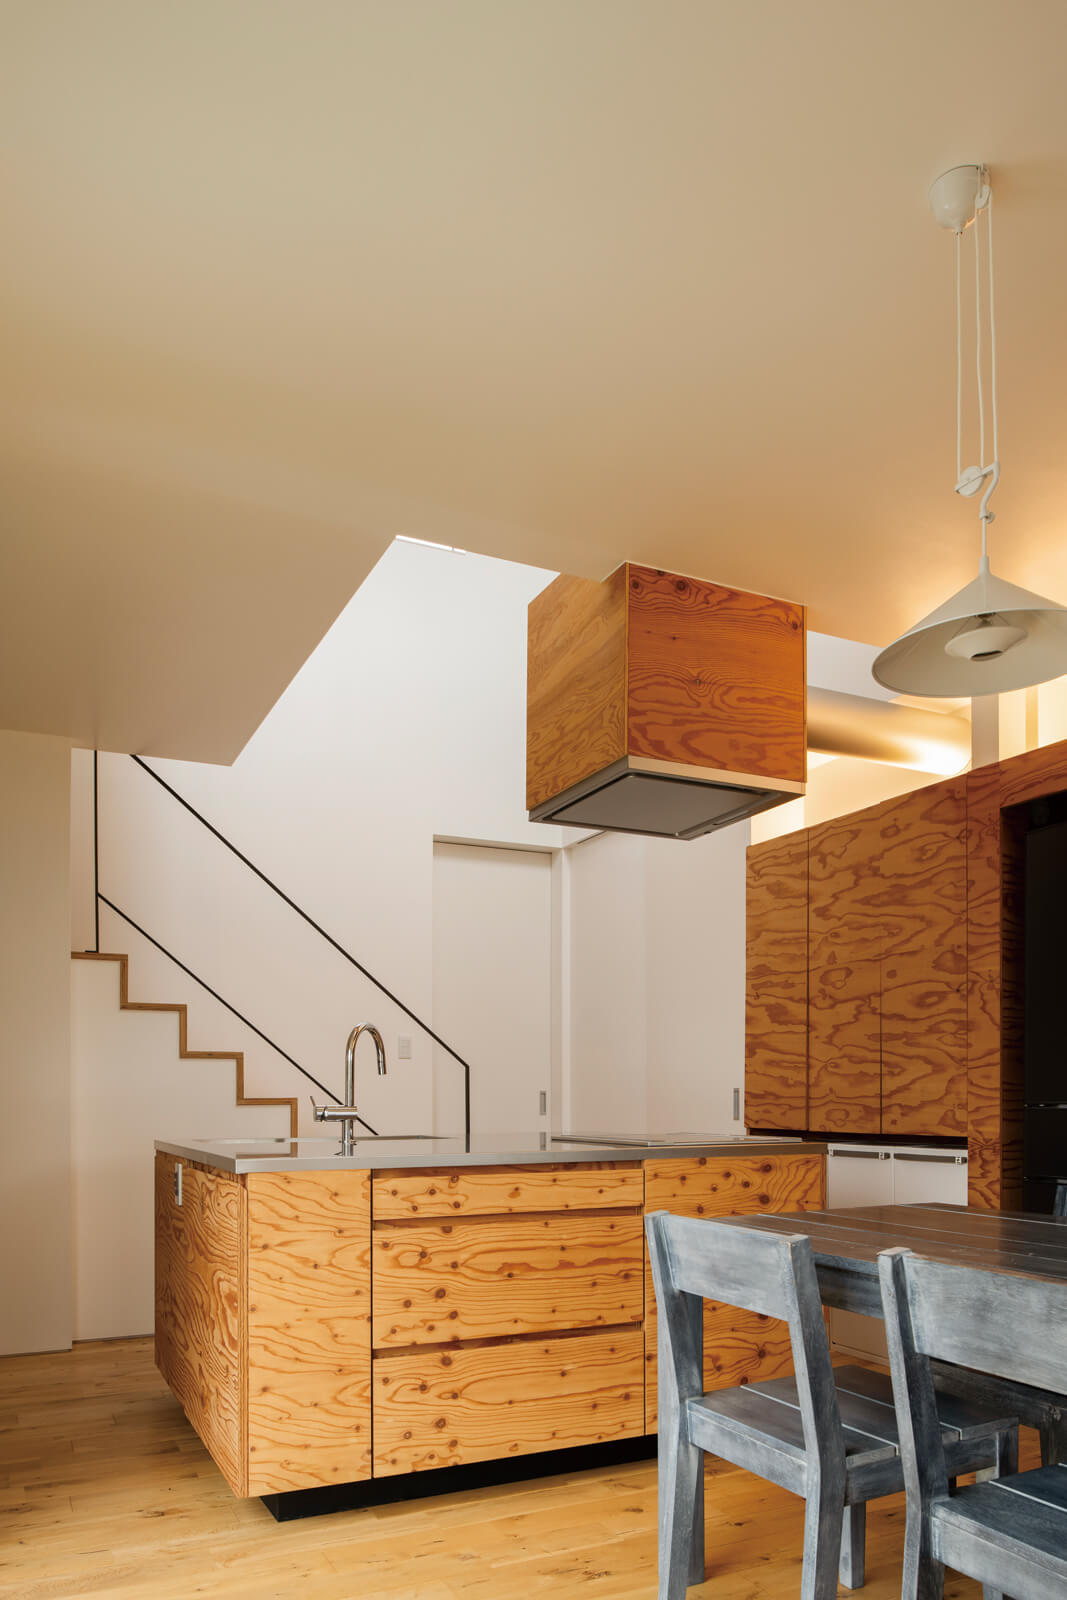 キッチンの面材は構造用合板、ワークトップにステンレスを採用。造作の棚はもちろんのこと、レンジフードも合板で覆い、統一感を演出。特徴的な木目や木の質感が目を惹く、シンプルかつ温かみのある佇まいのダイニング・キッチンとなった